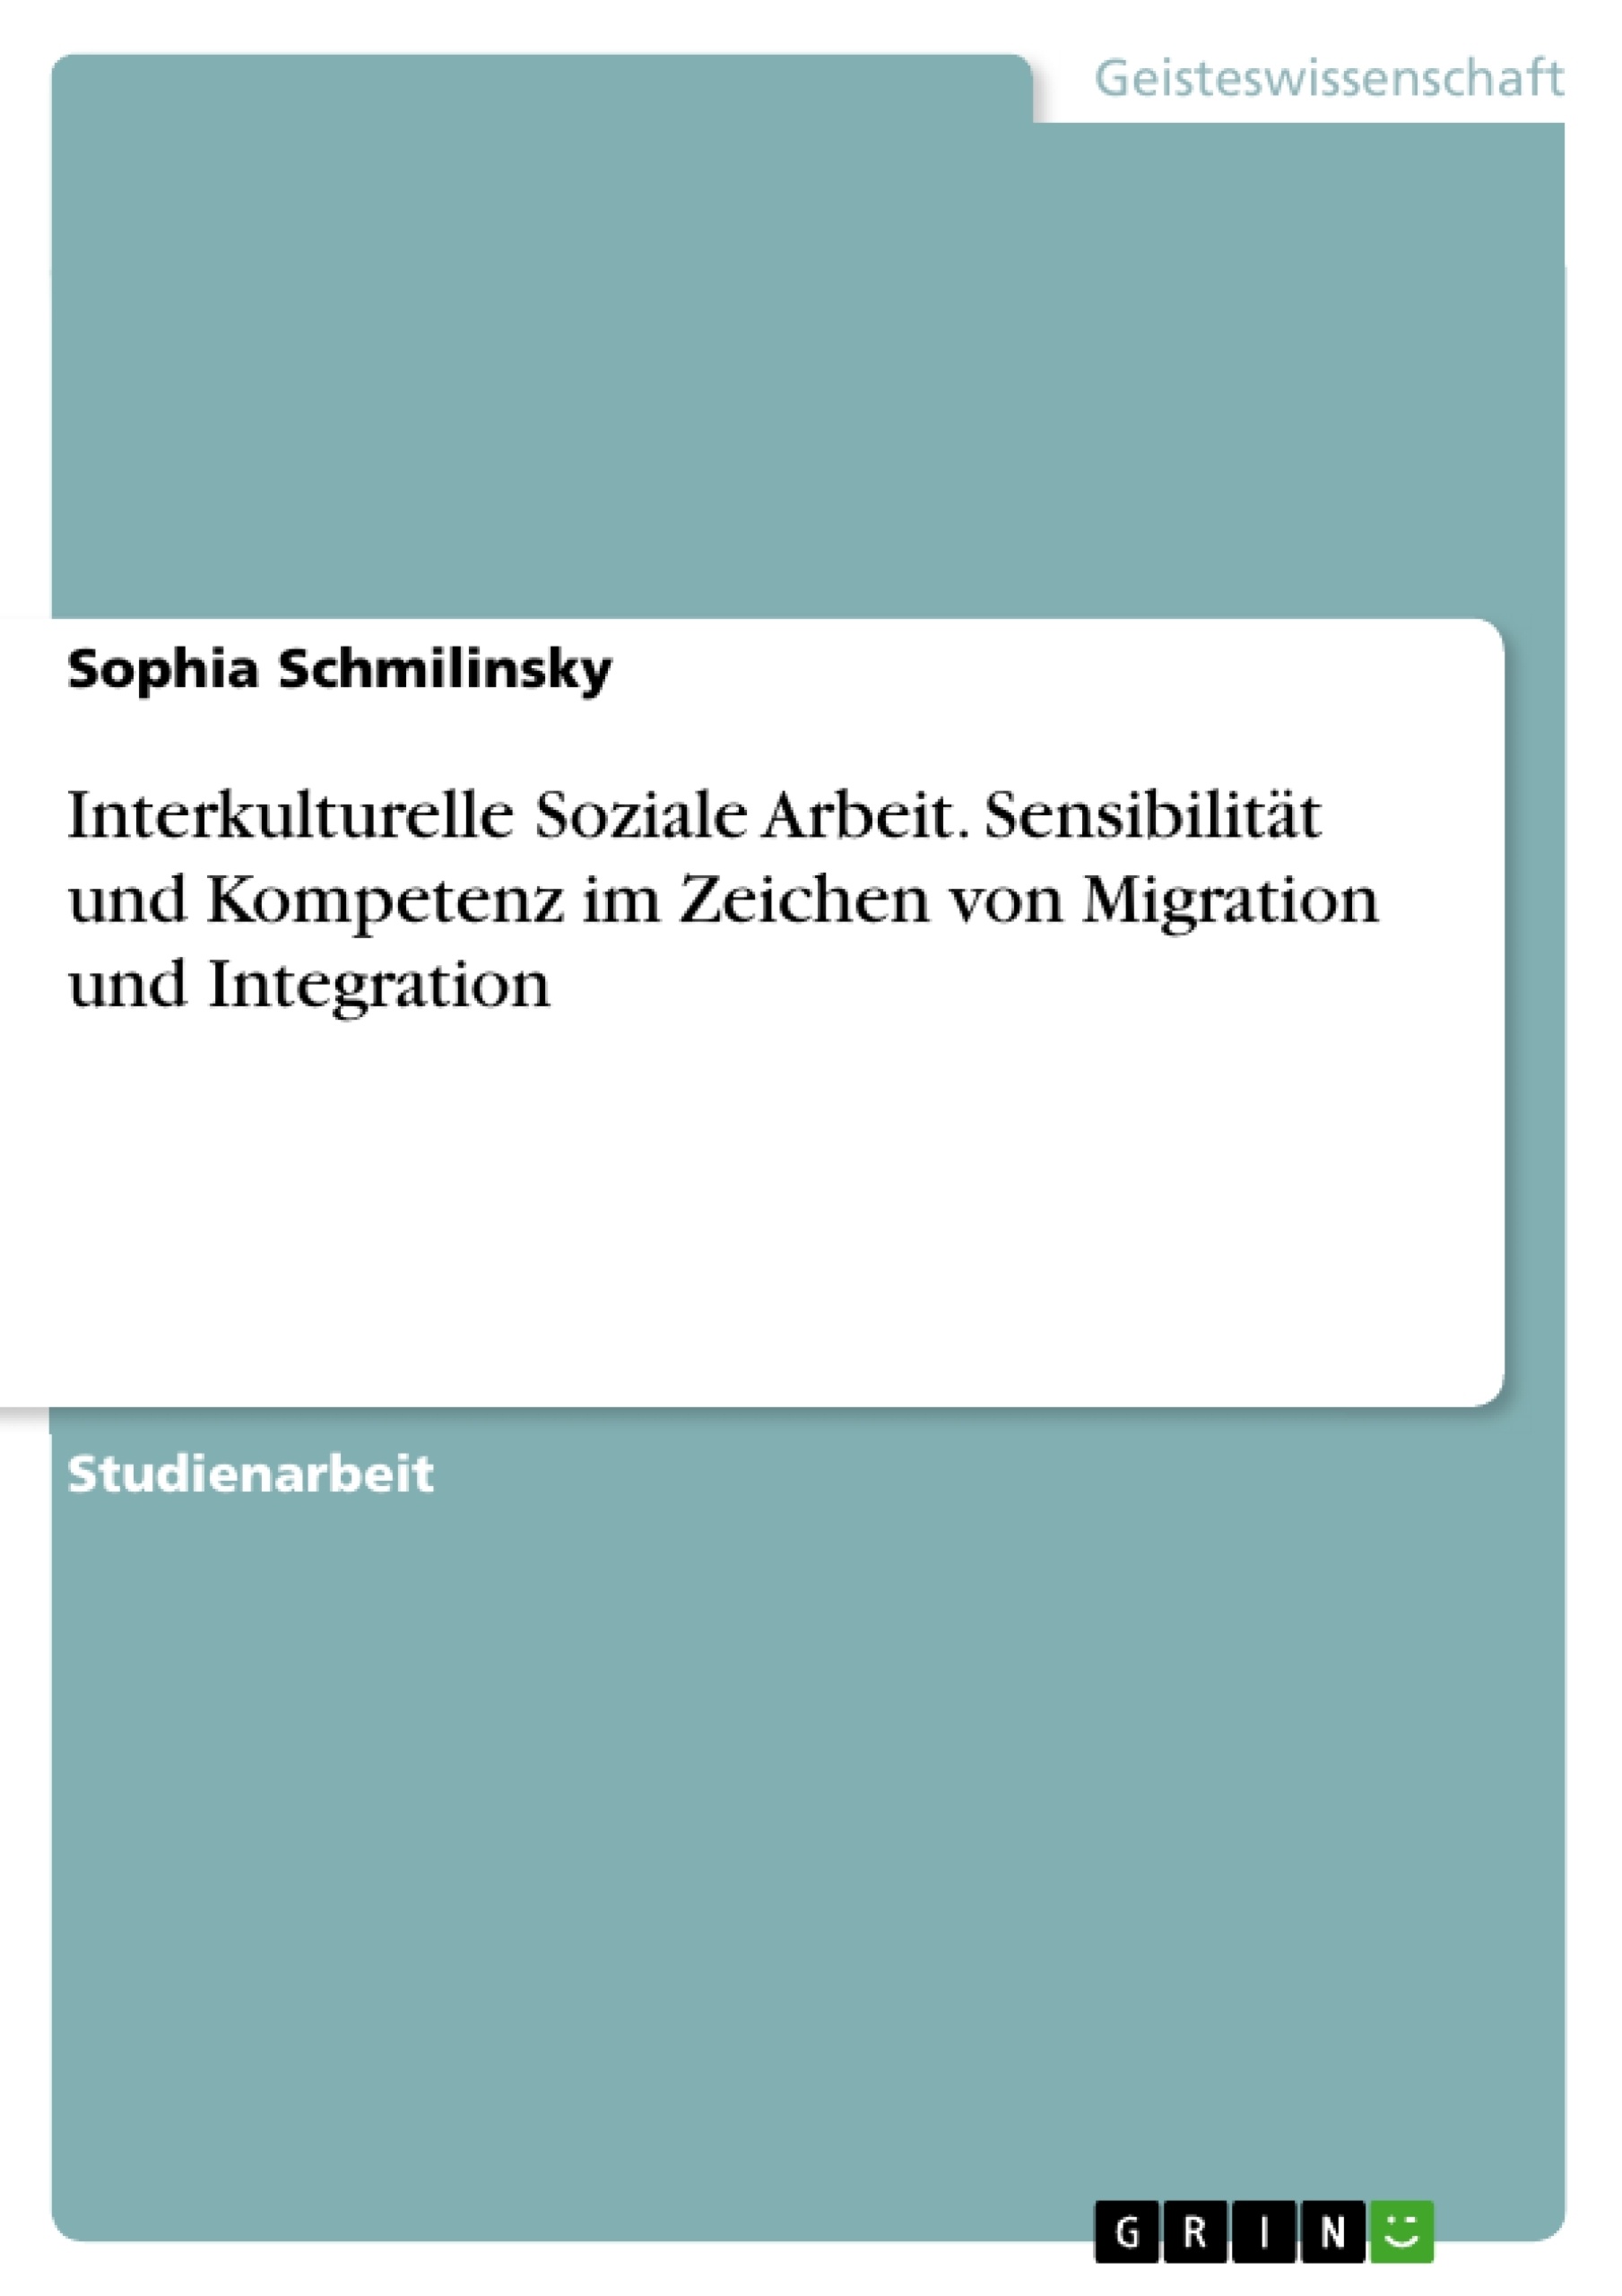 Title: Interkulturelle Soziale Arbeit. Sensibilität und Kompetenz im Zeichen von Migration und Integration